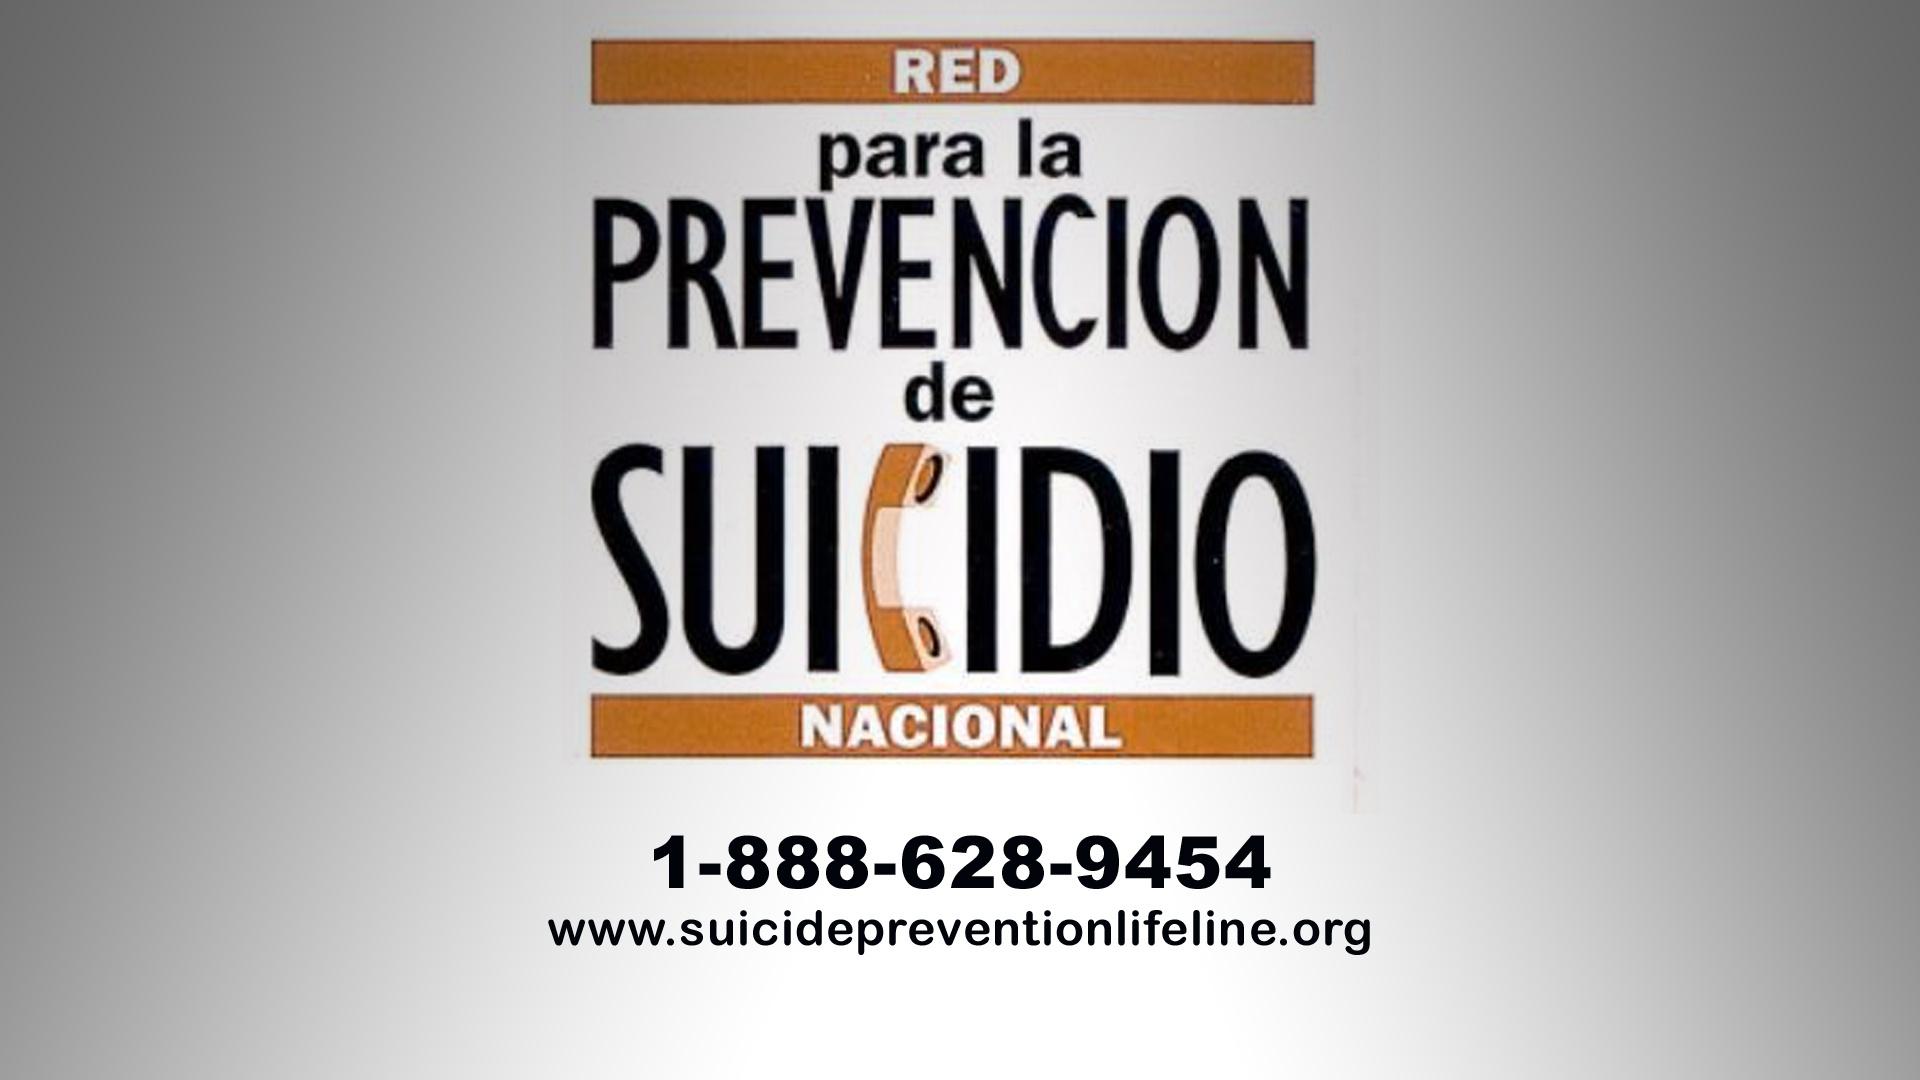 para la prevencion de suicidio nacional 1-888-628-9454